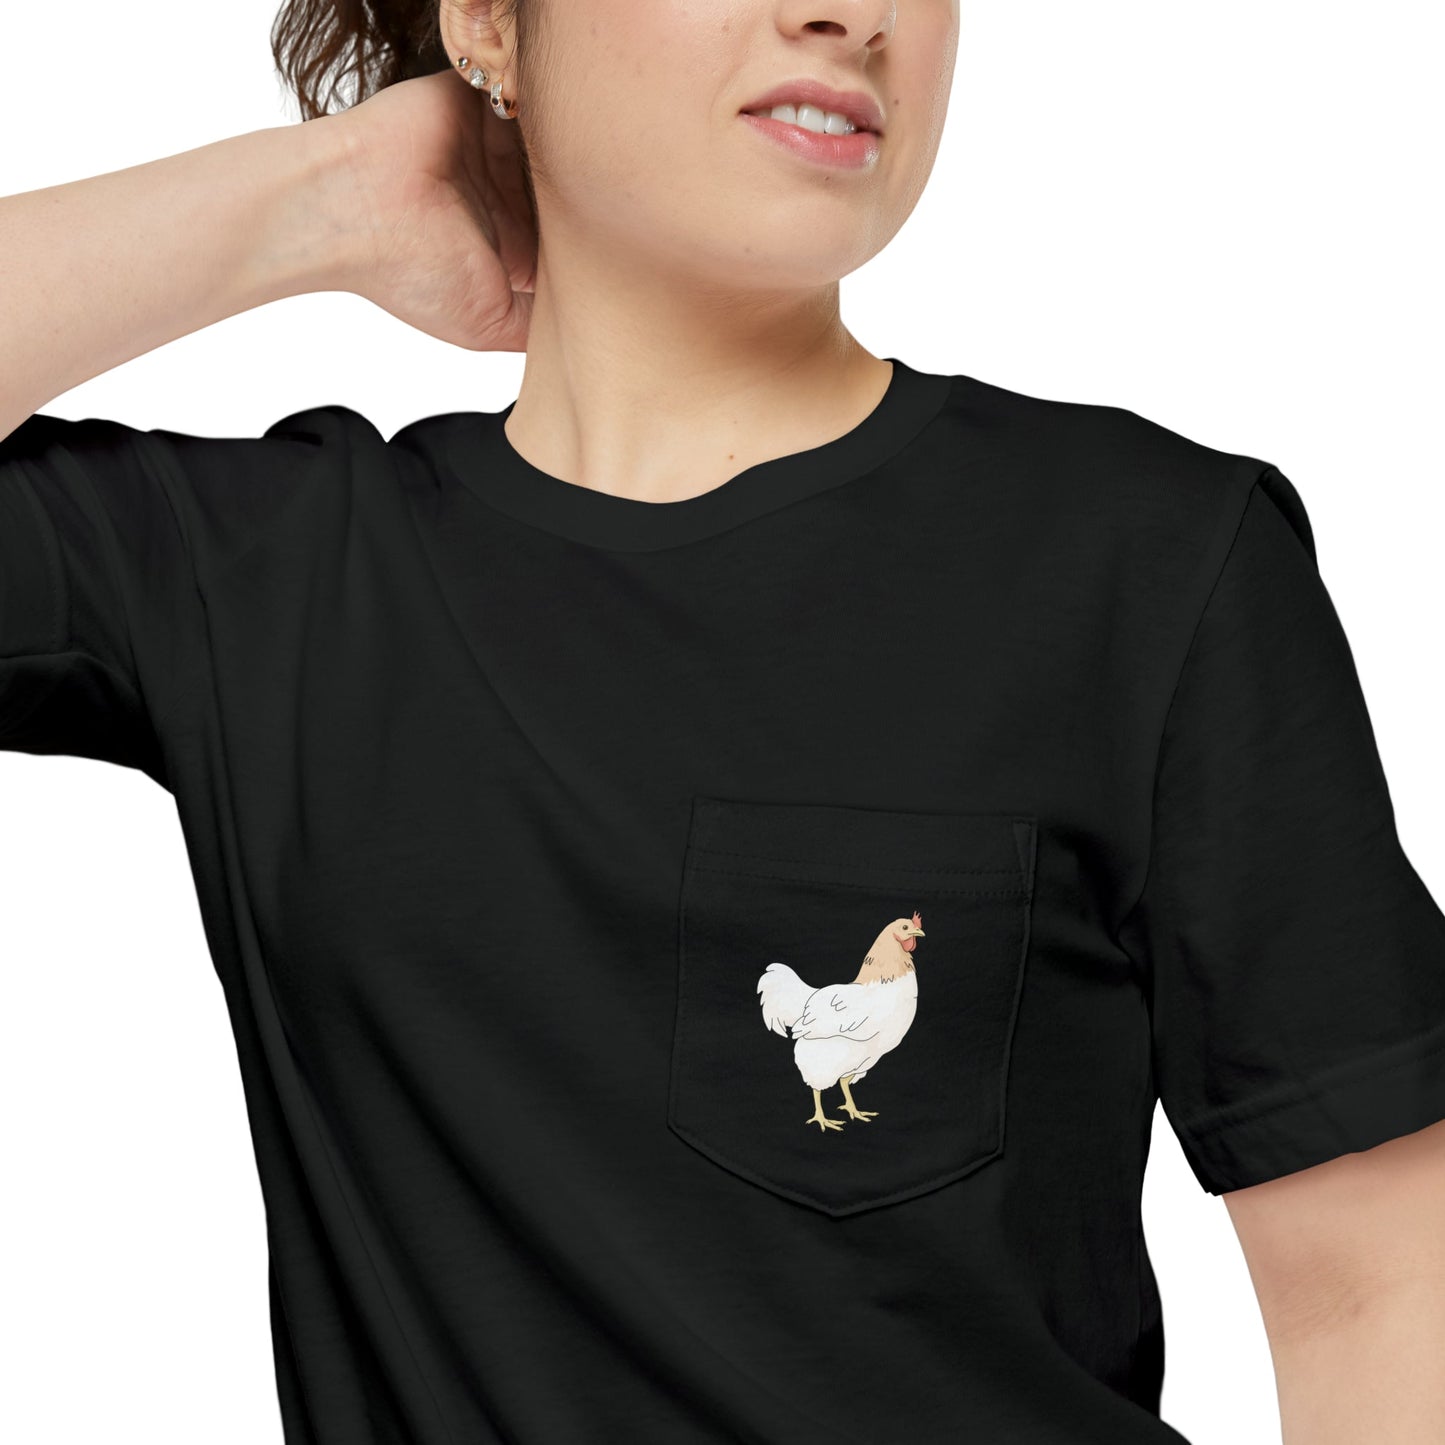 Chicken | Pocket T-shirt - Detezi Designs-93781292061745764121